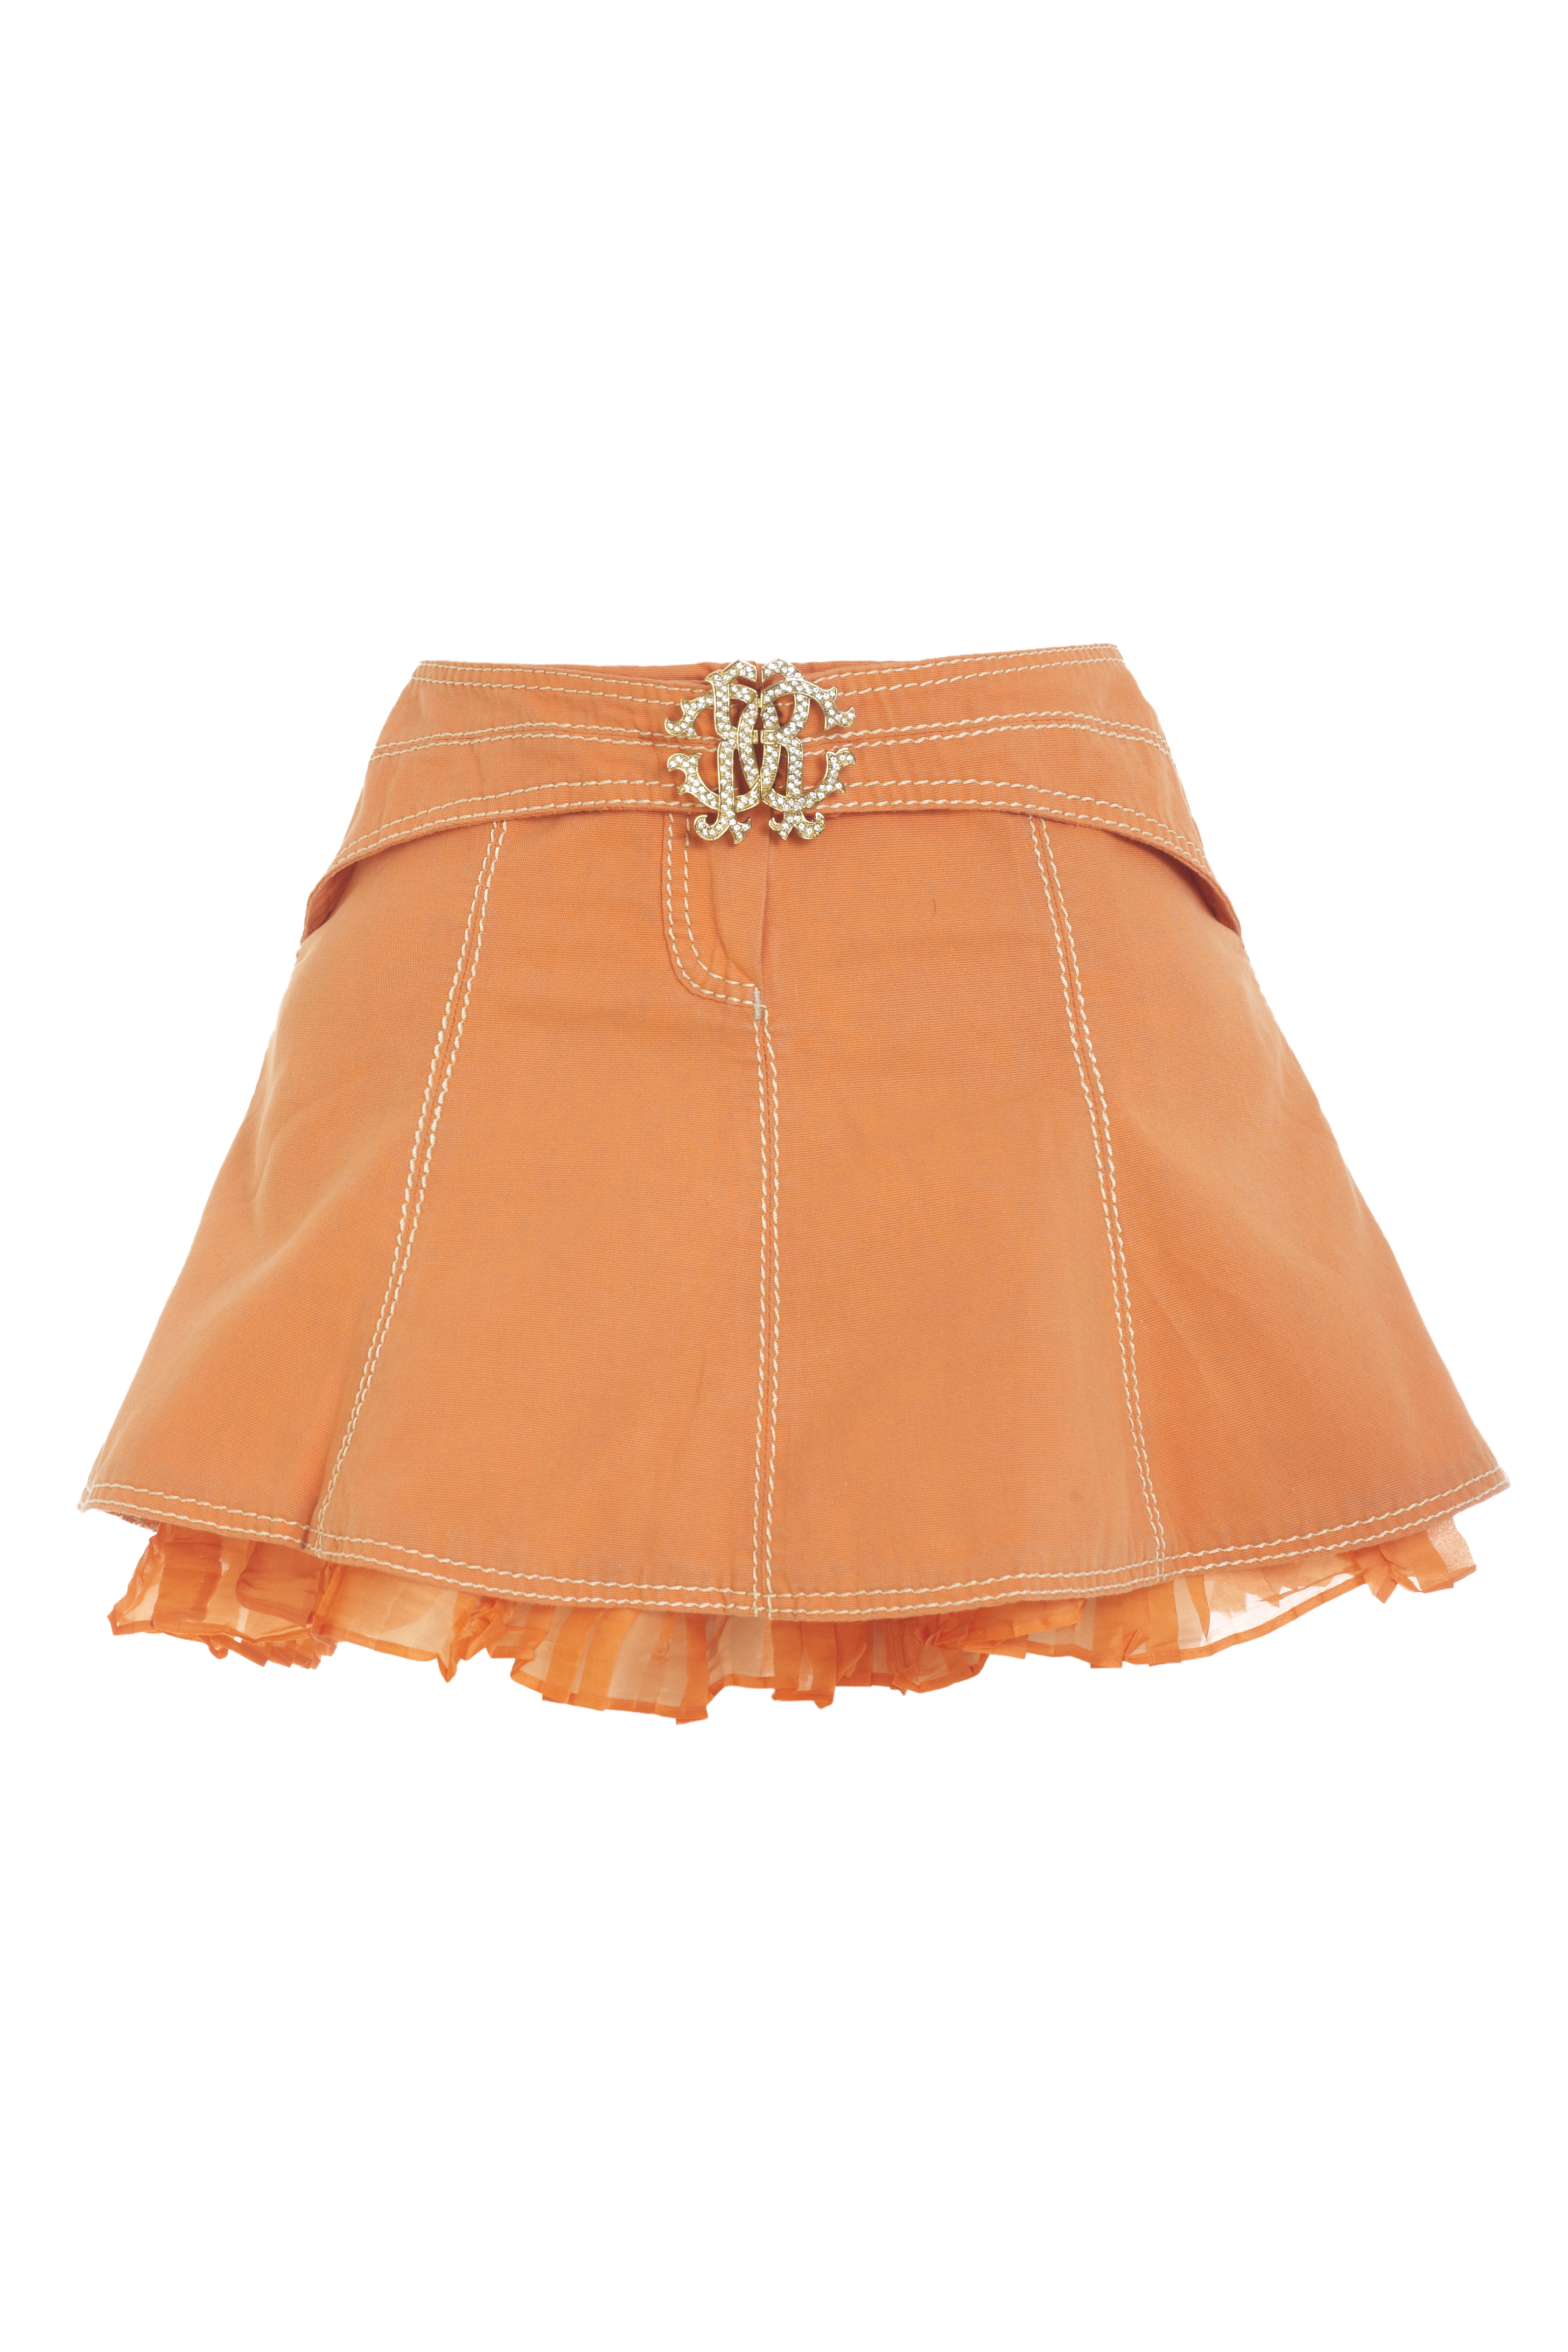 Roberto Cavalli orange distressed denim skirt with white stitch details